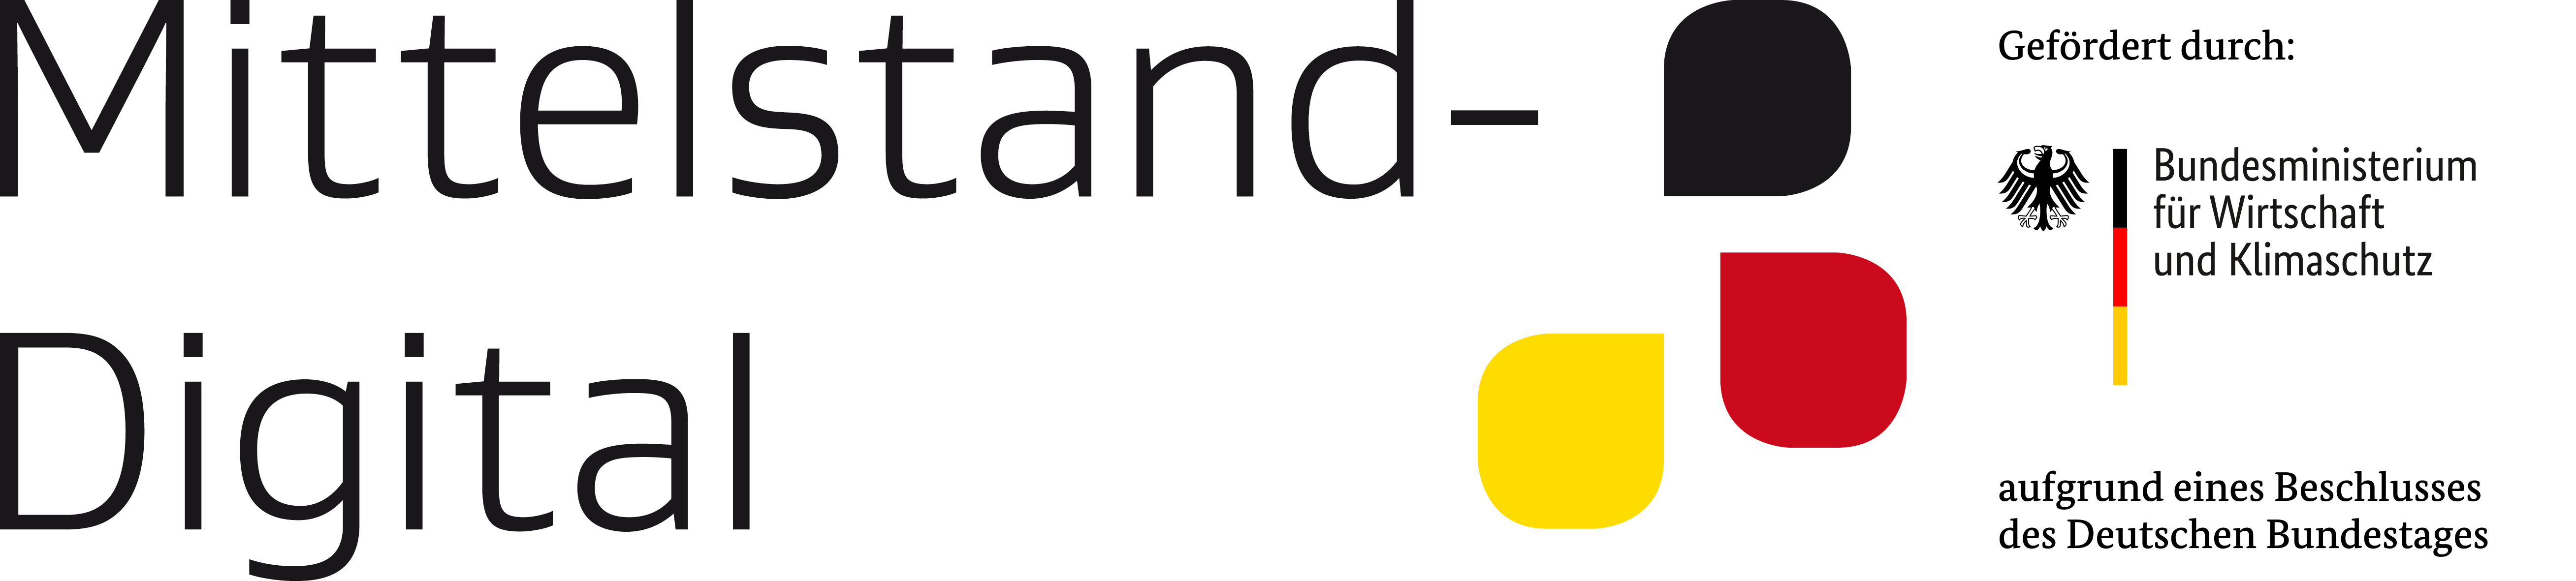 Logo Mittelstand Digital Förderung